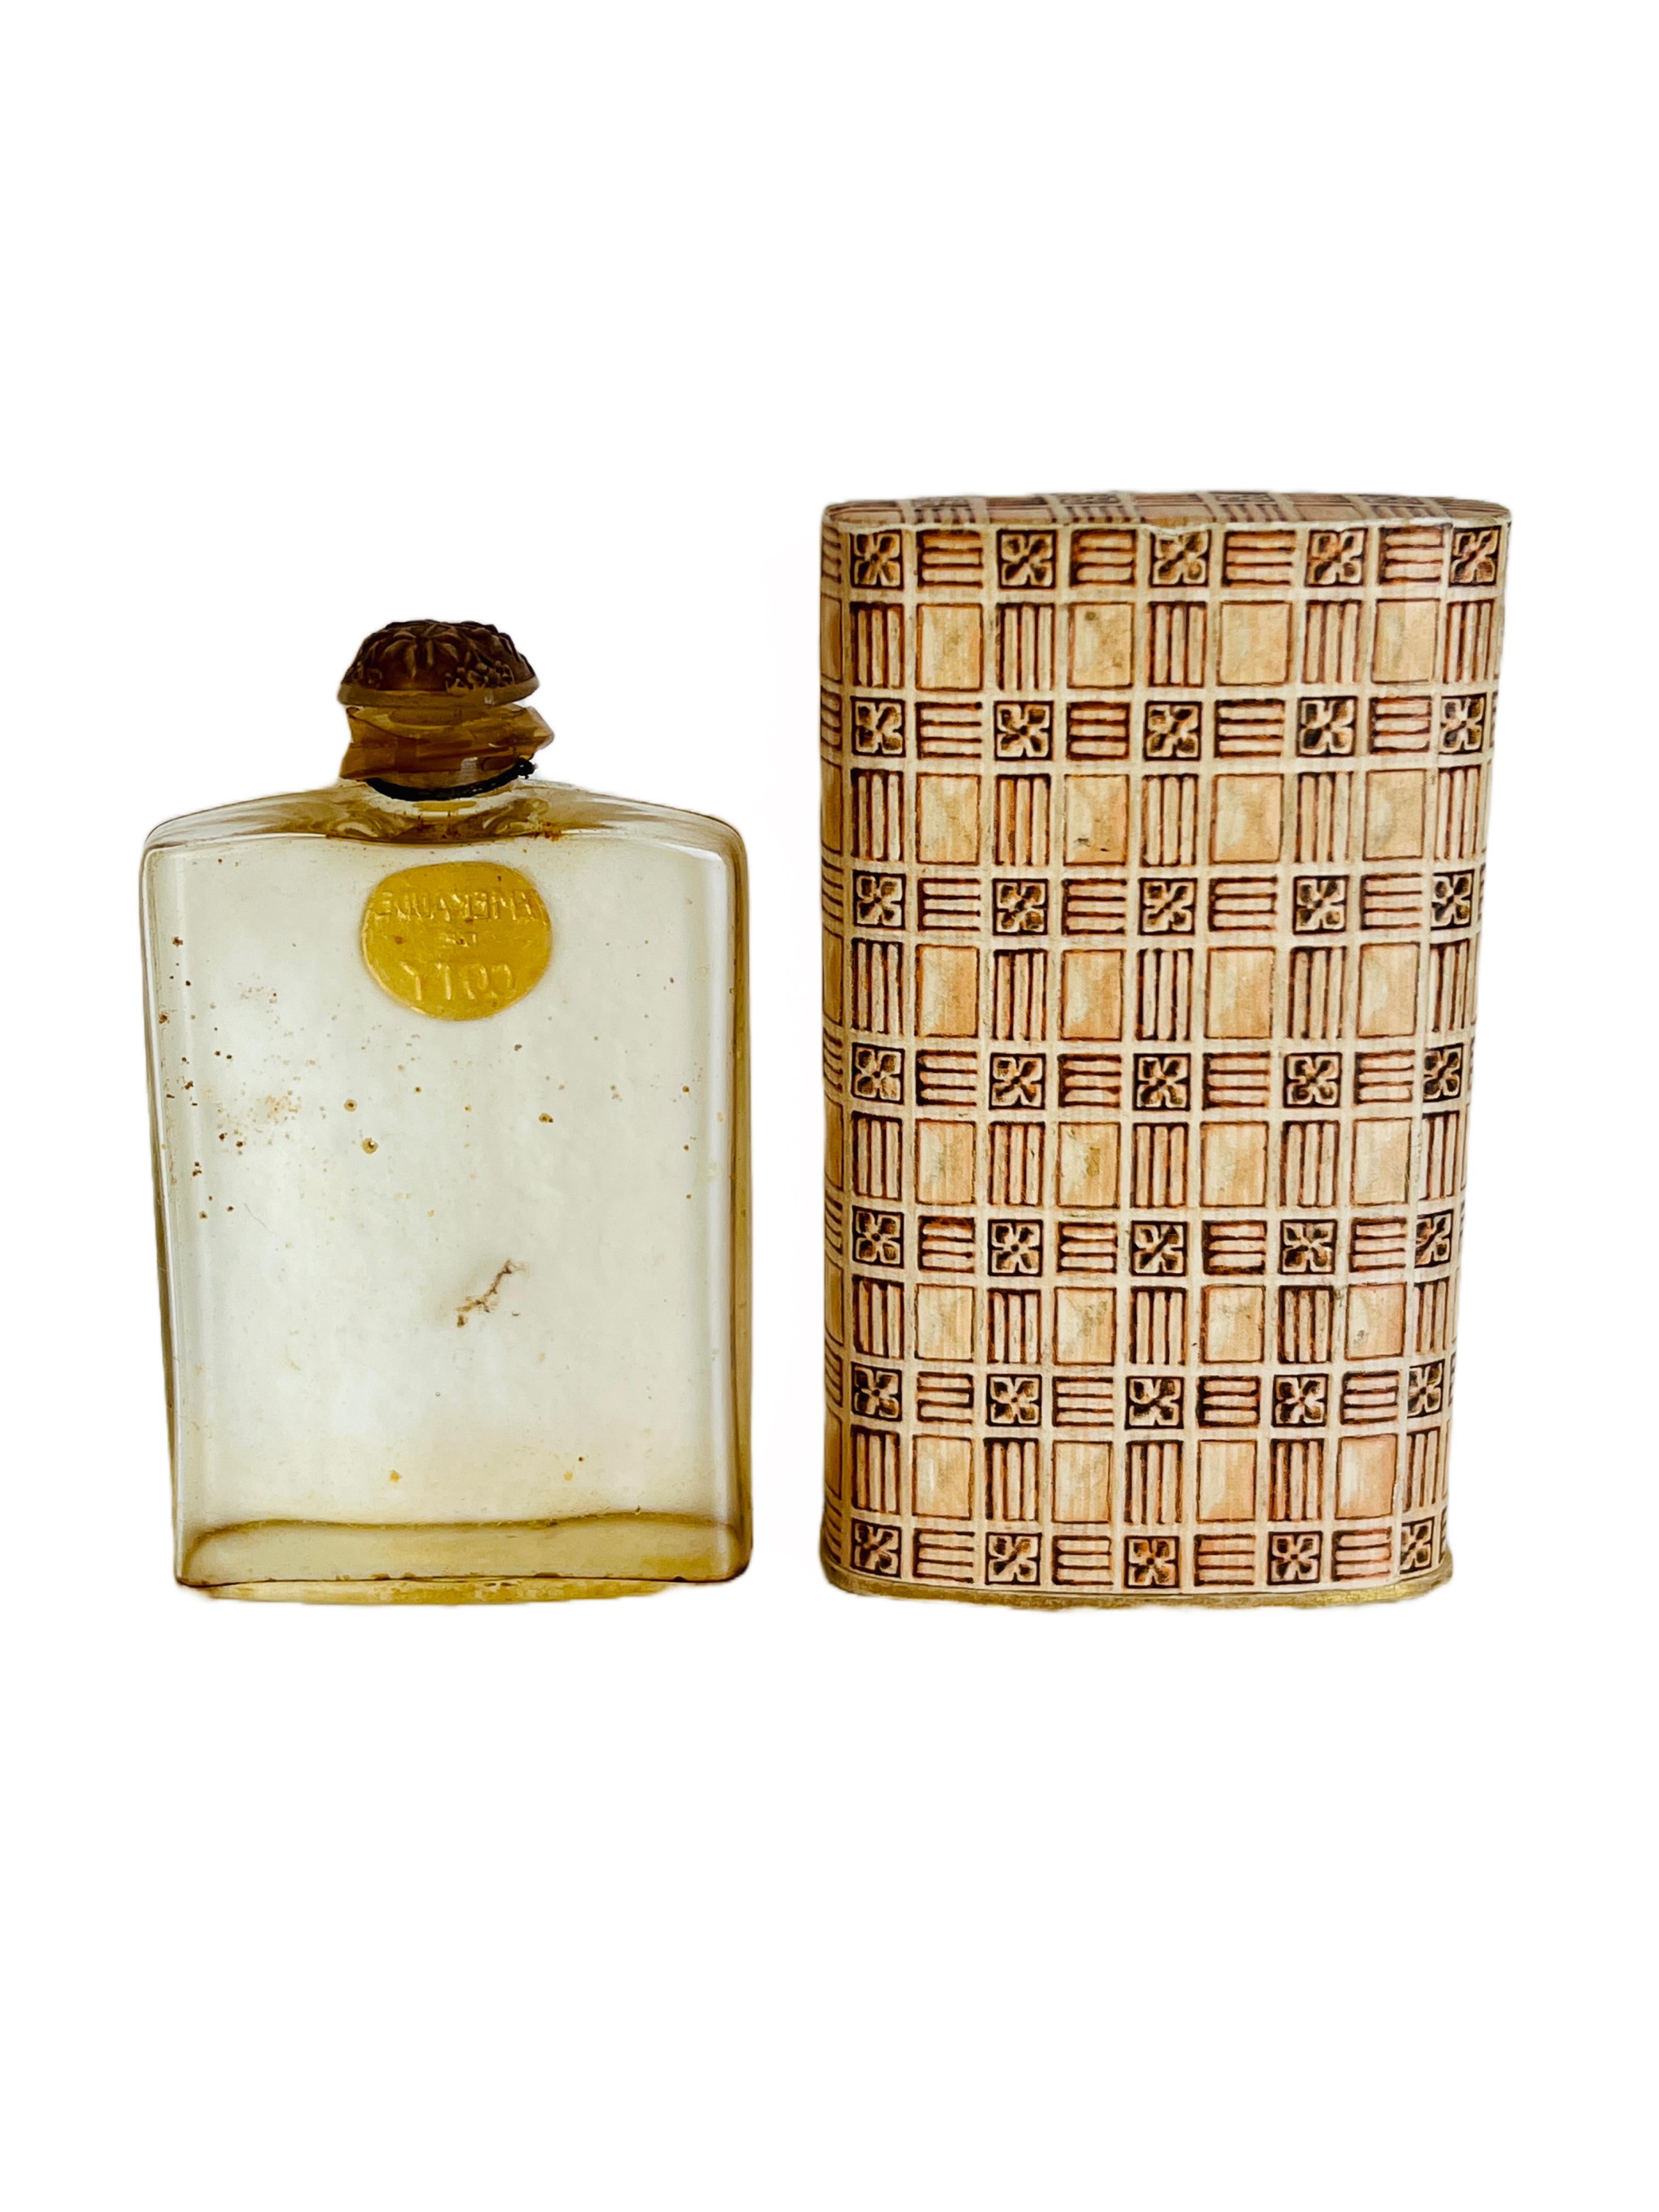 Dieser leere Parfümflakon von Lalique enthielt einst eine der ersten Kreationen von Coty, 